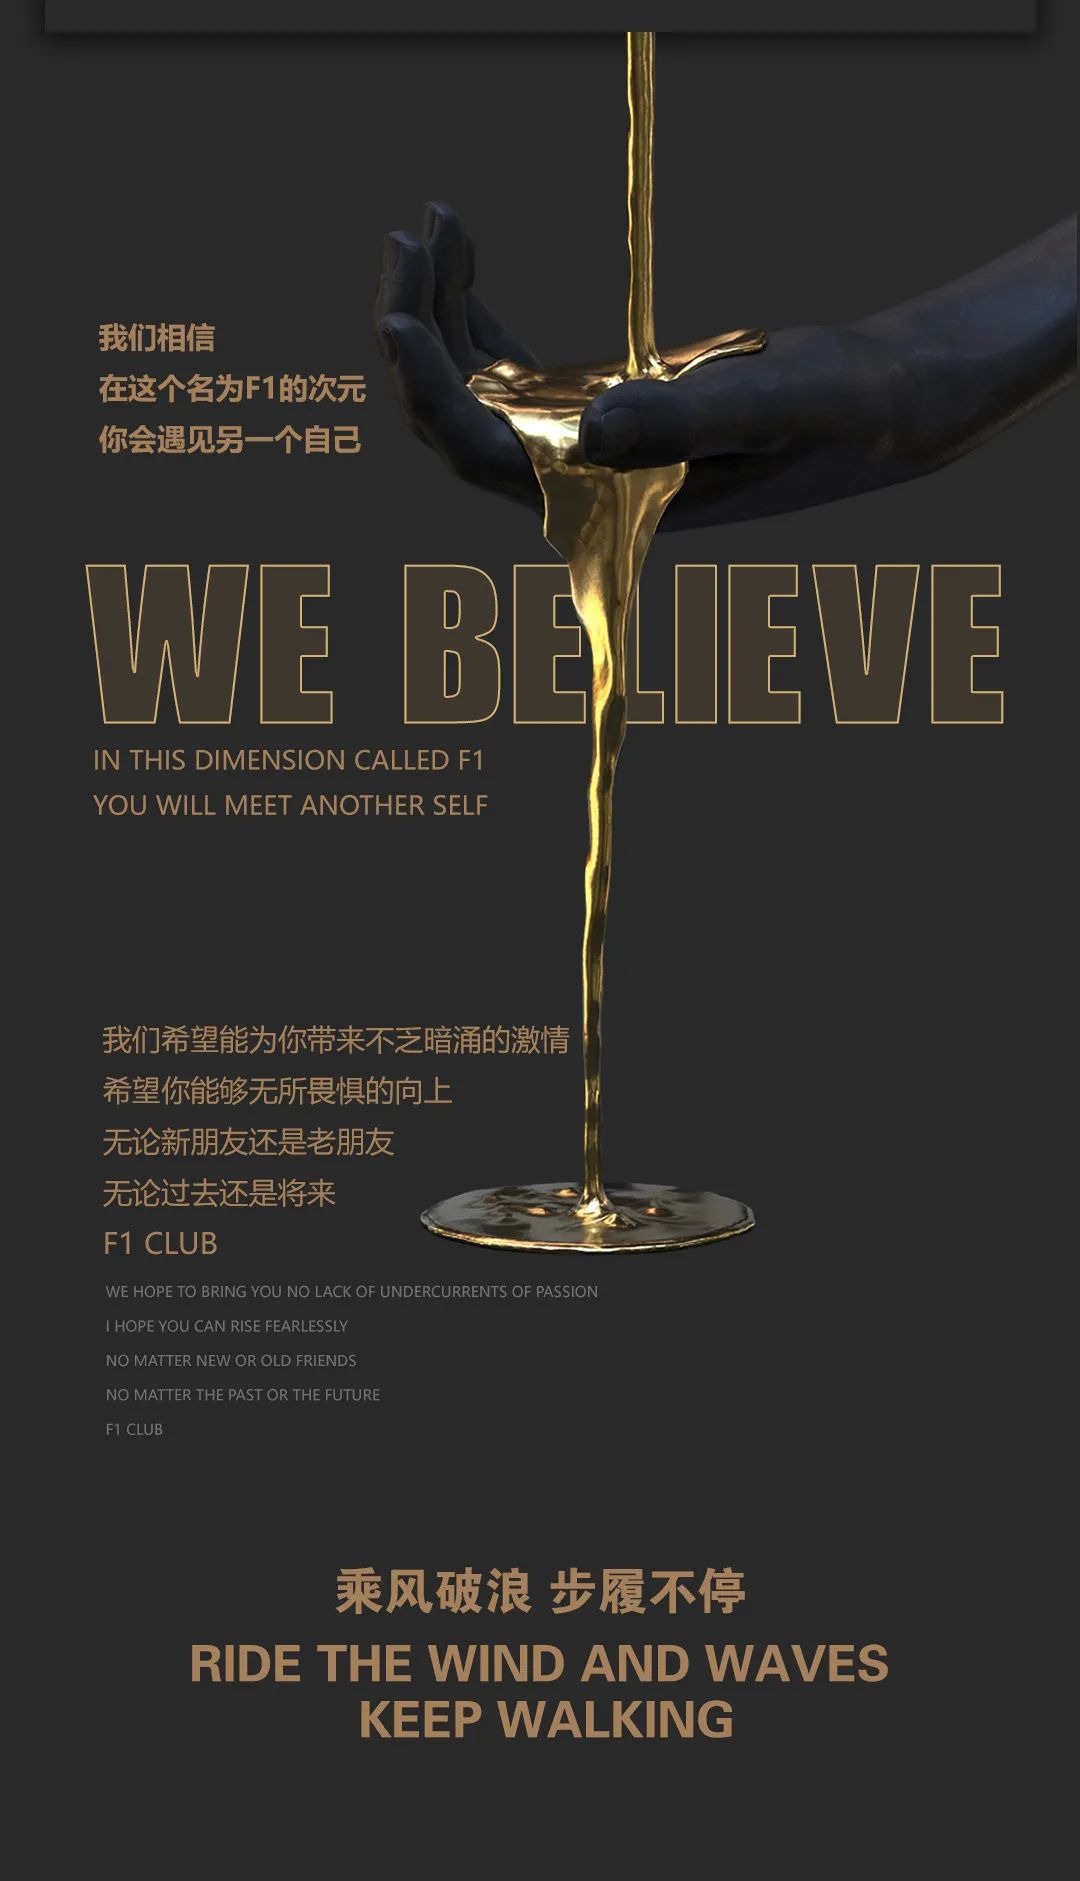 12月28日 F1娱乐文化集团 《乘风破浪 步履不停》拾肆周年荣耀盛典 一个划时代娱乐品牌--品质生活方式的风向标-晋江F1酒吧/F1 CLUB